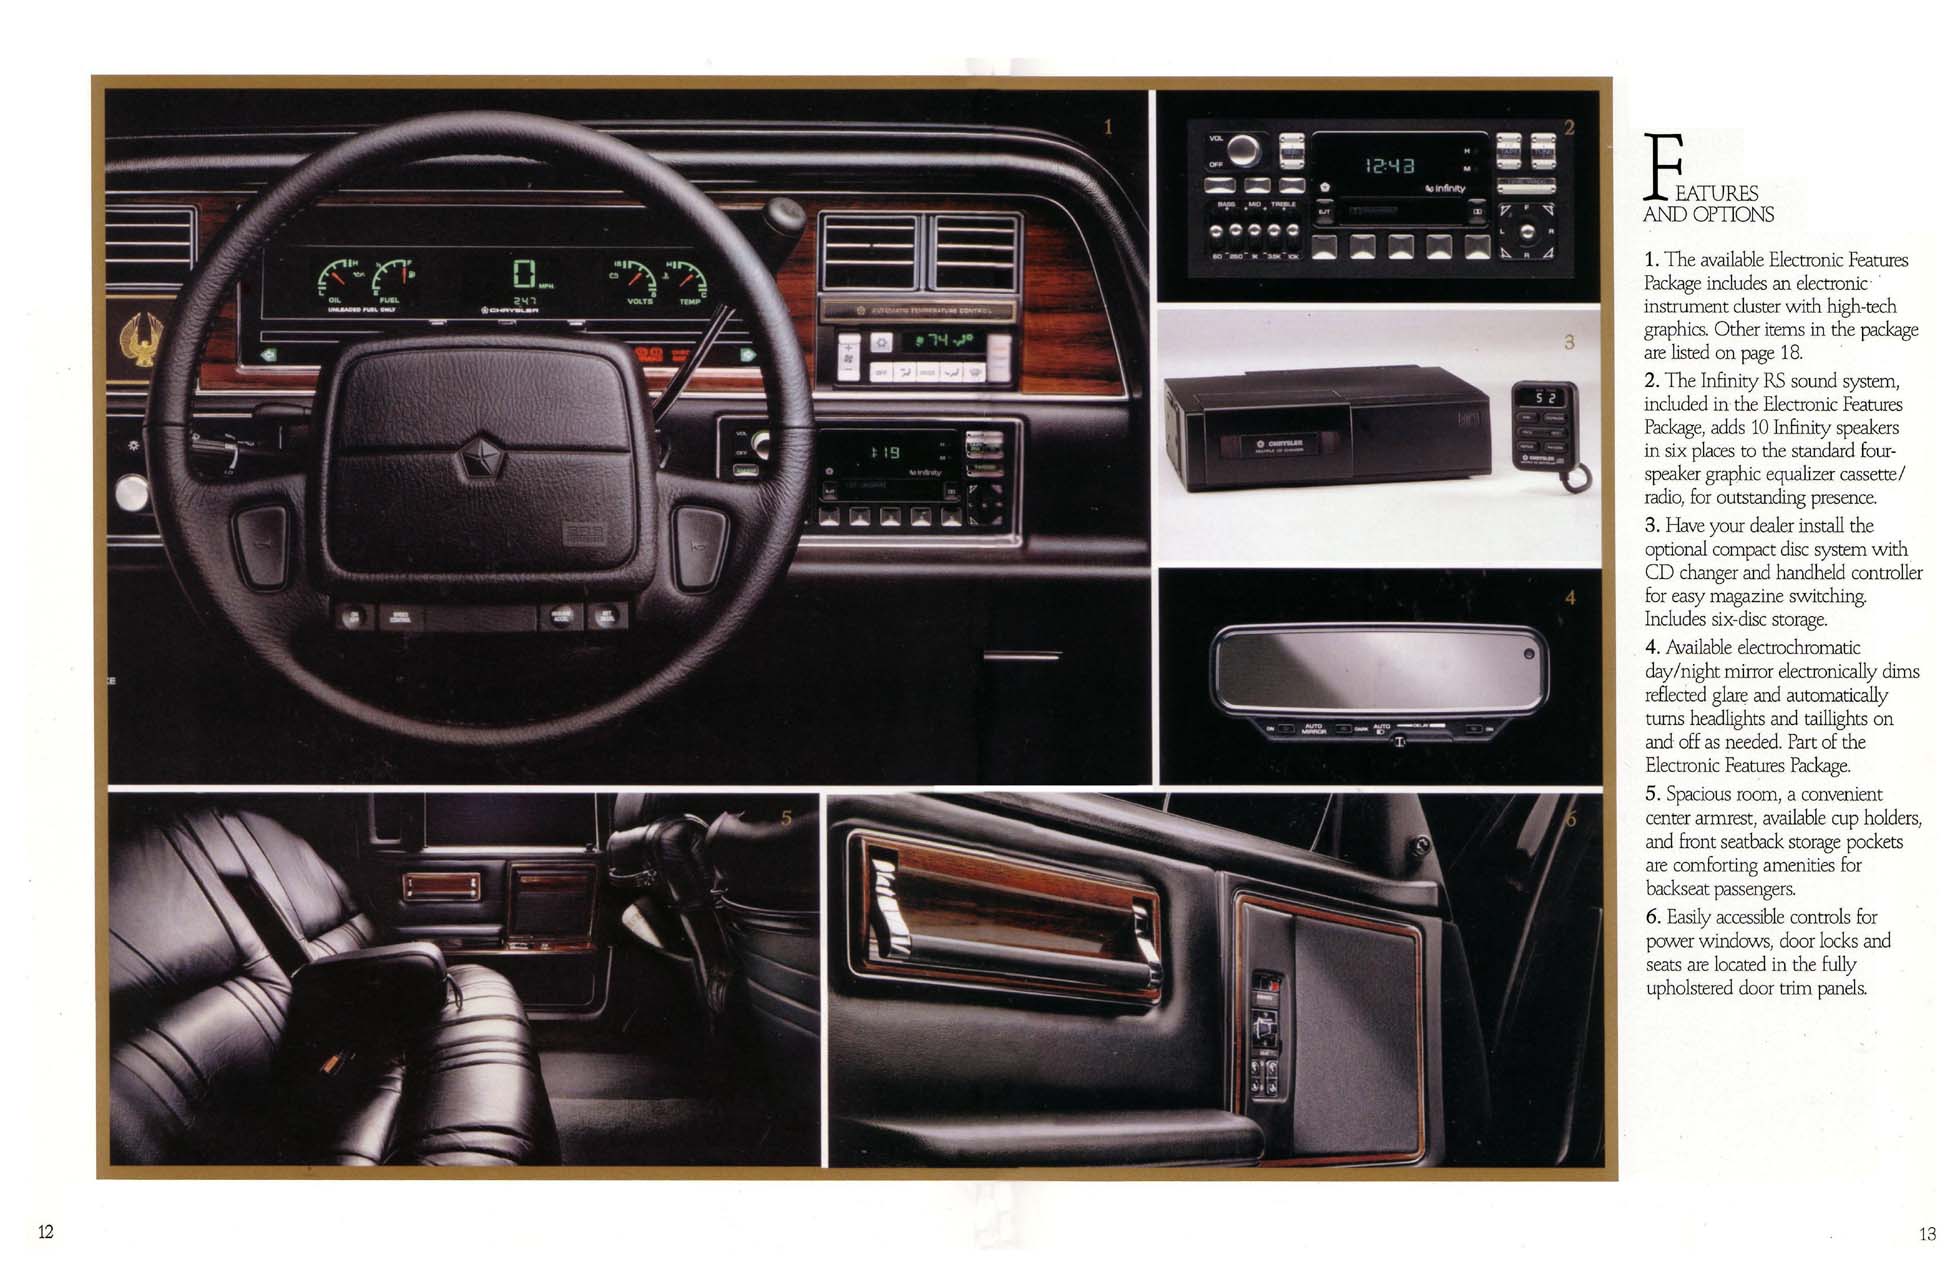 1993 Chrysler Imperial-12-13